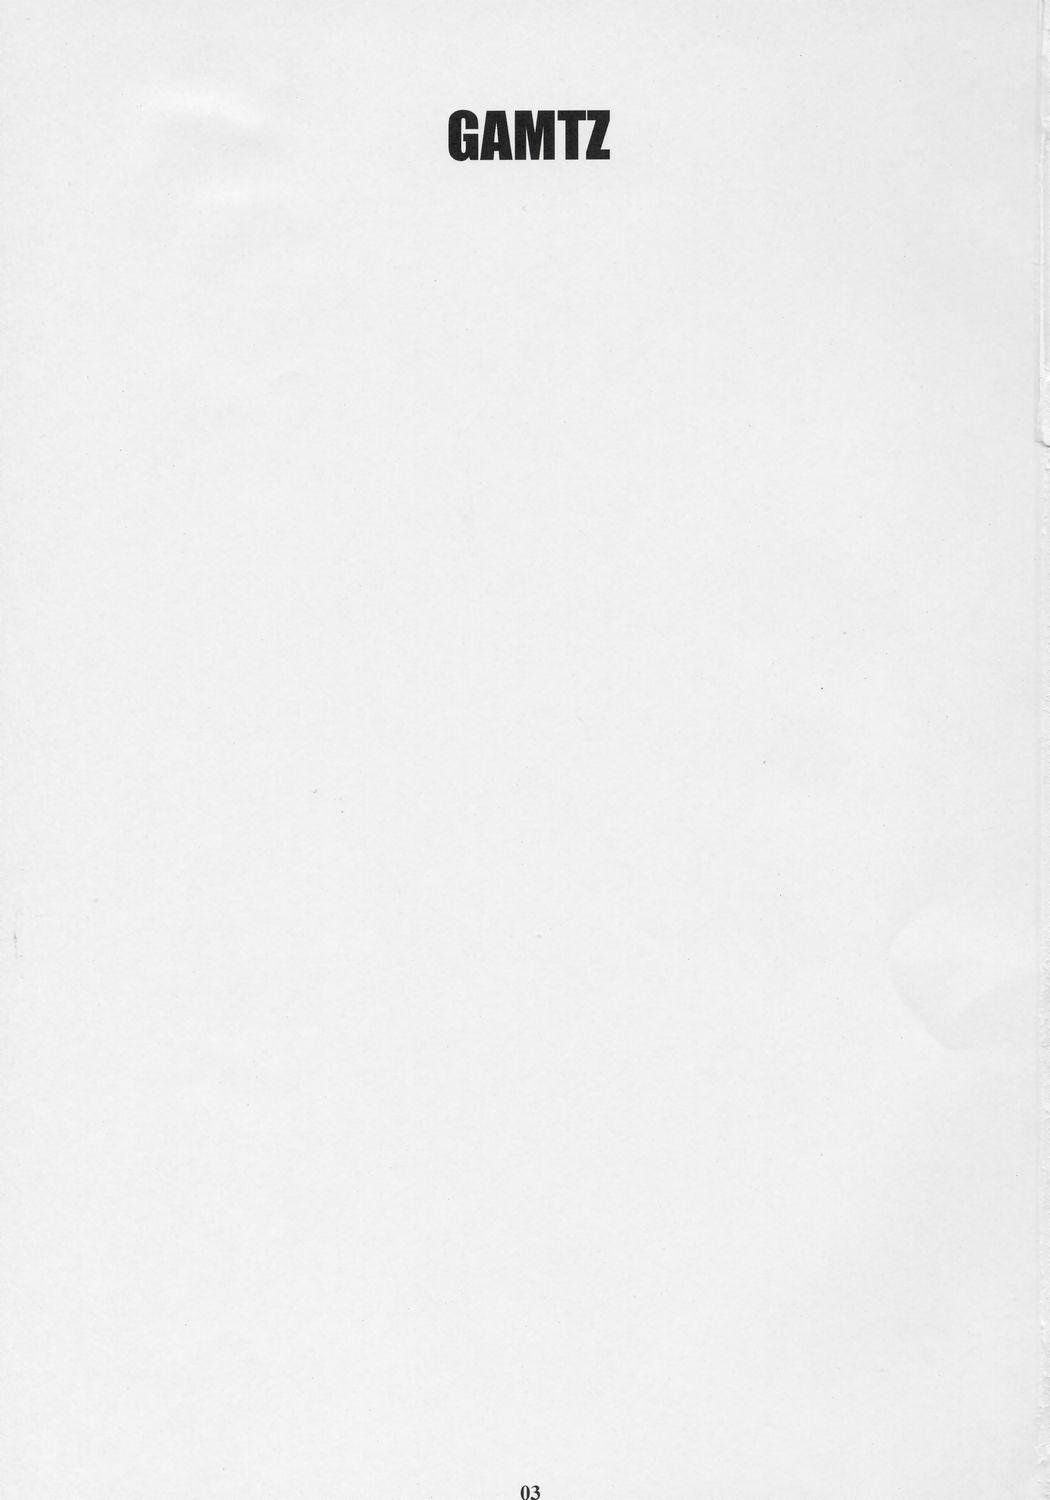 Madura GAMTZ - Gantz Tall - Page 3